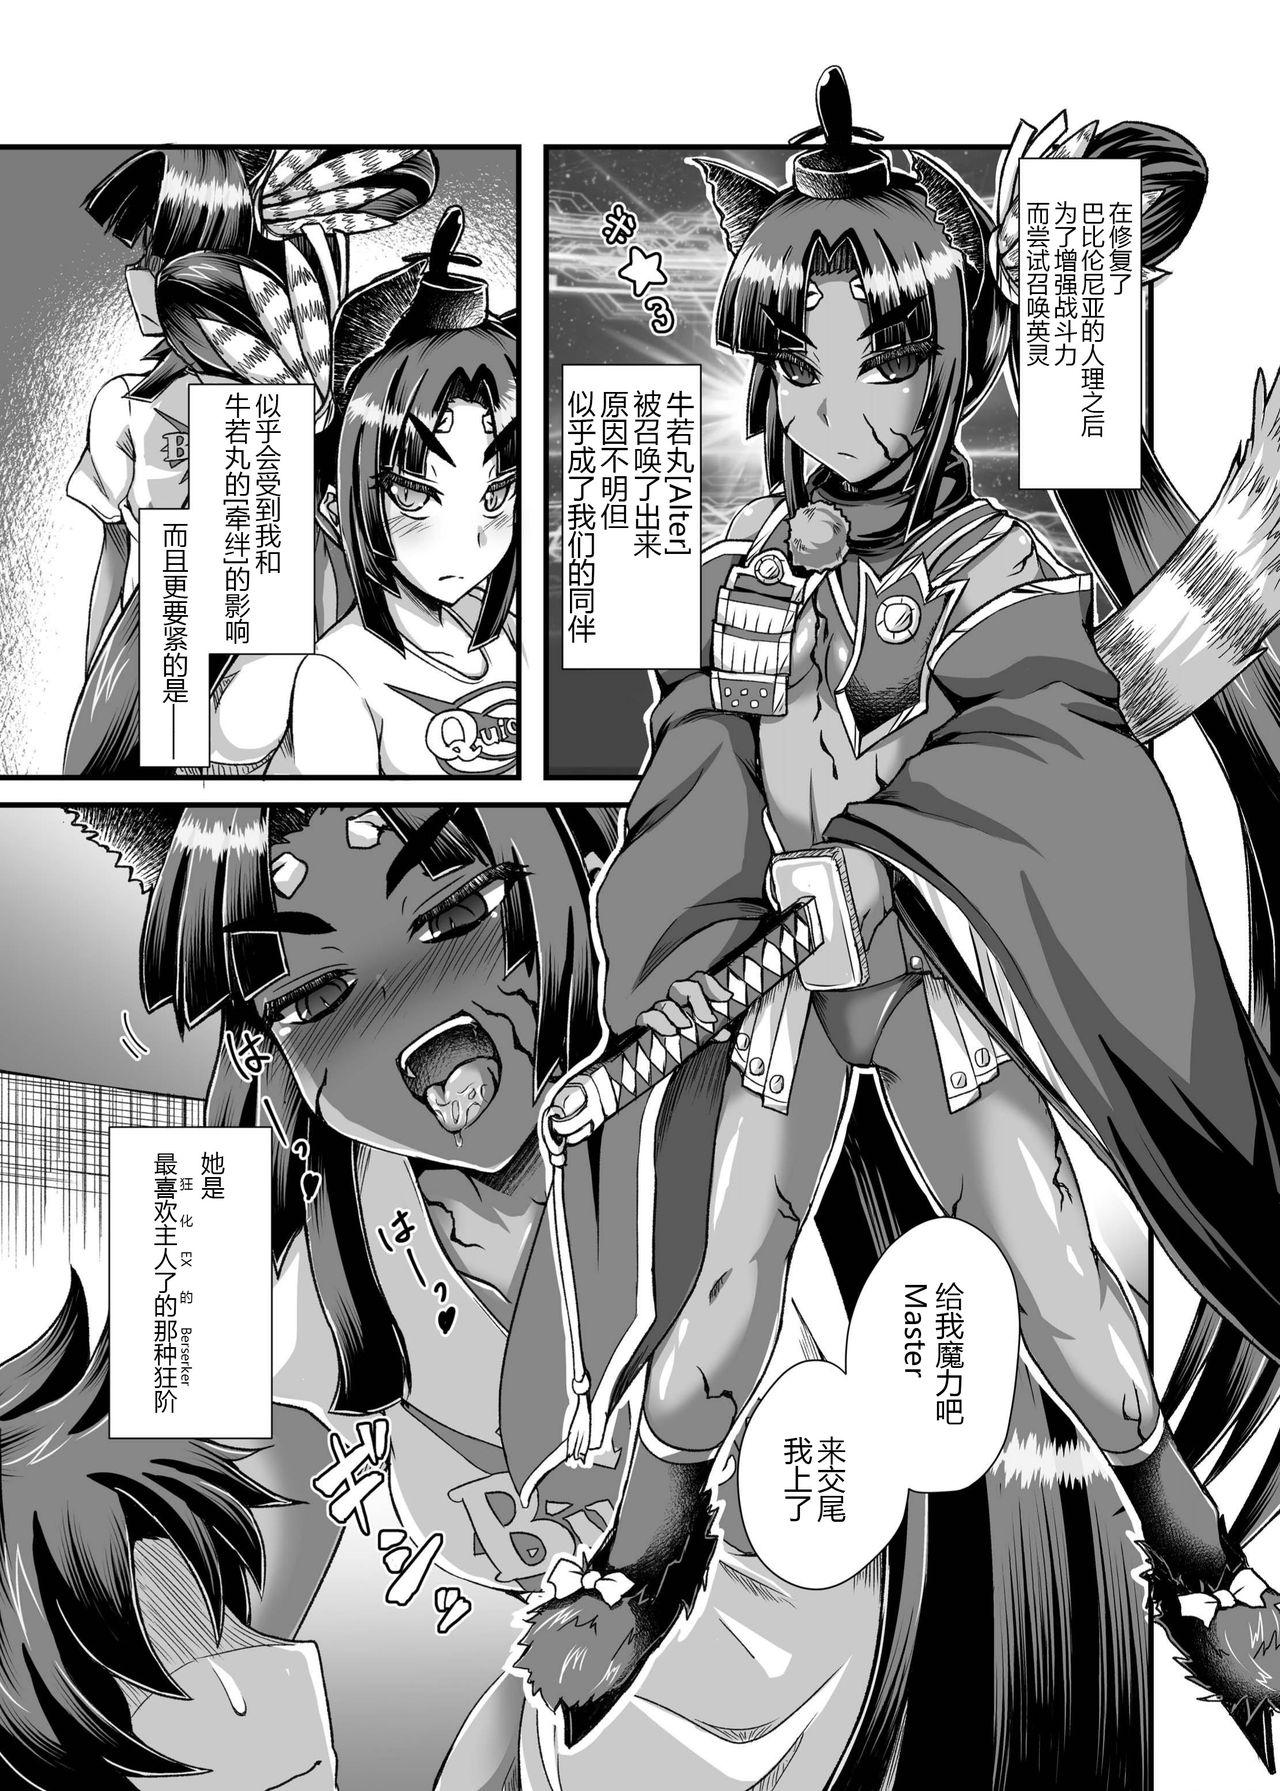 Semen Ushiwakamaru, Oshite Mairu! - Fate grand order Spa - Page 7